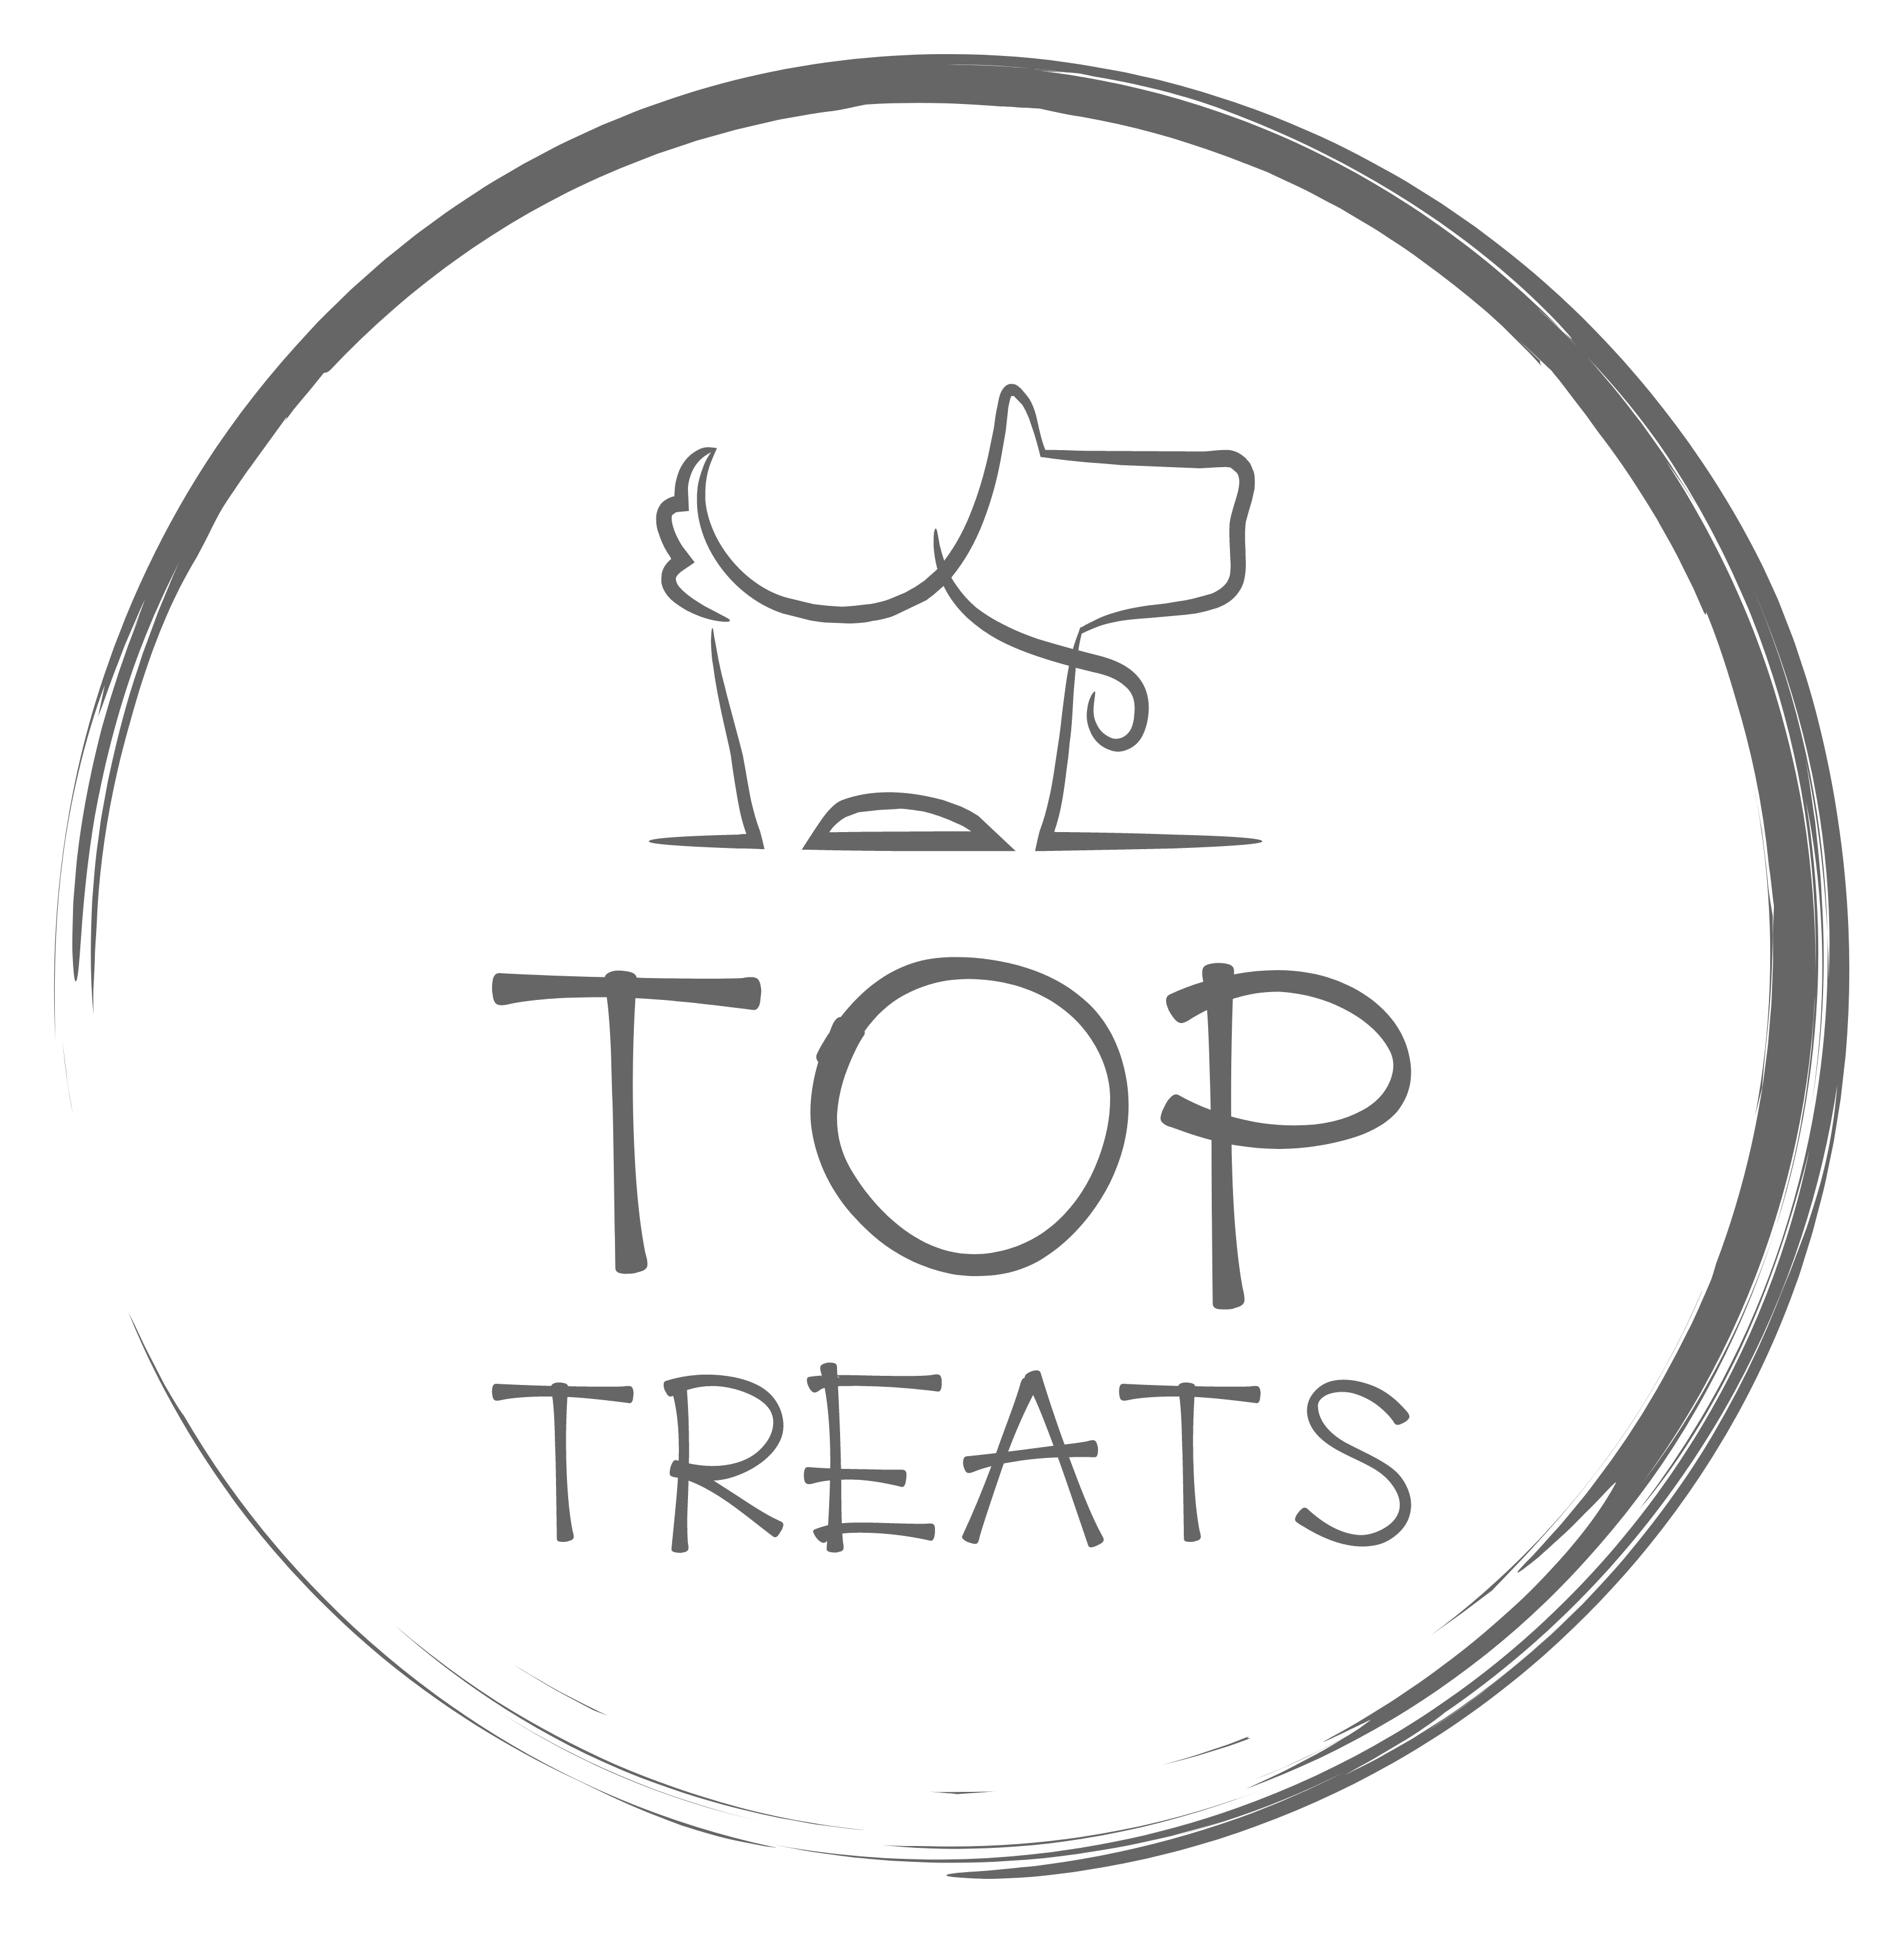 Top-treats